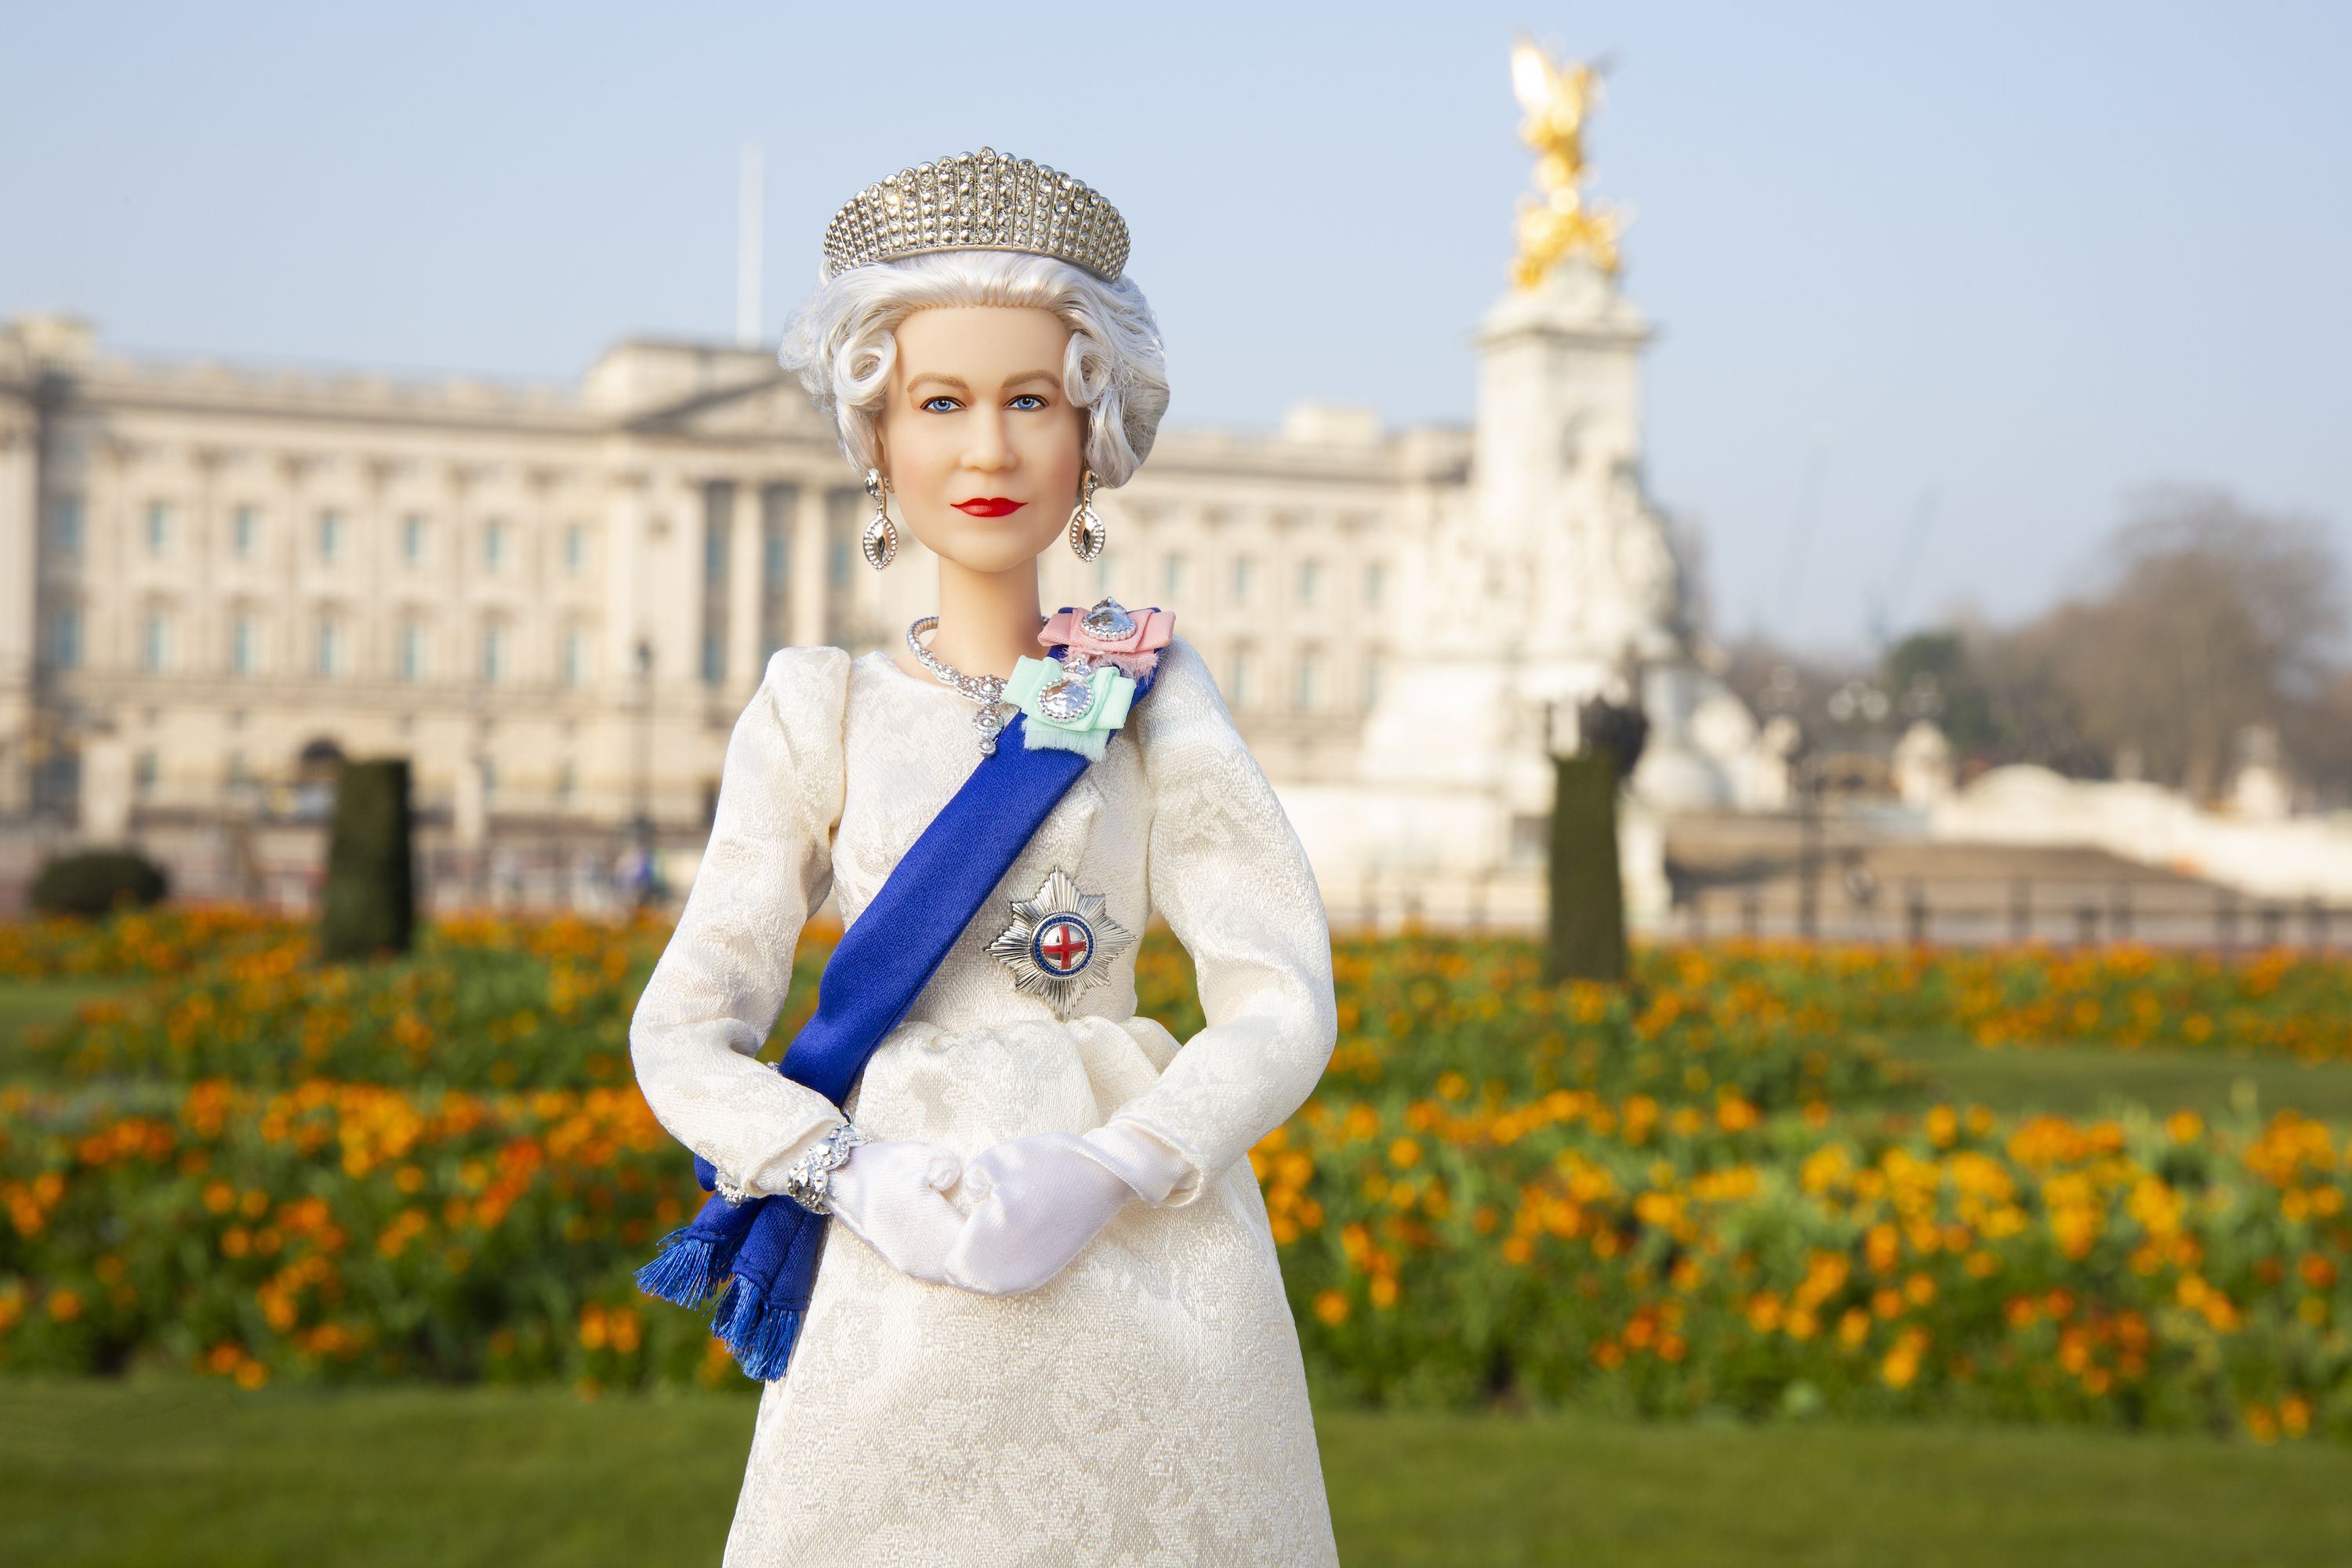 エリザベス女王の在位70周年を祝う、限定バービー人形が発売 